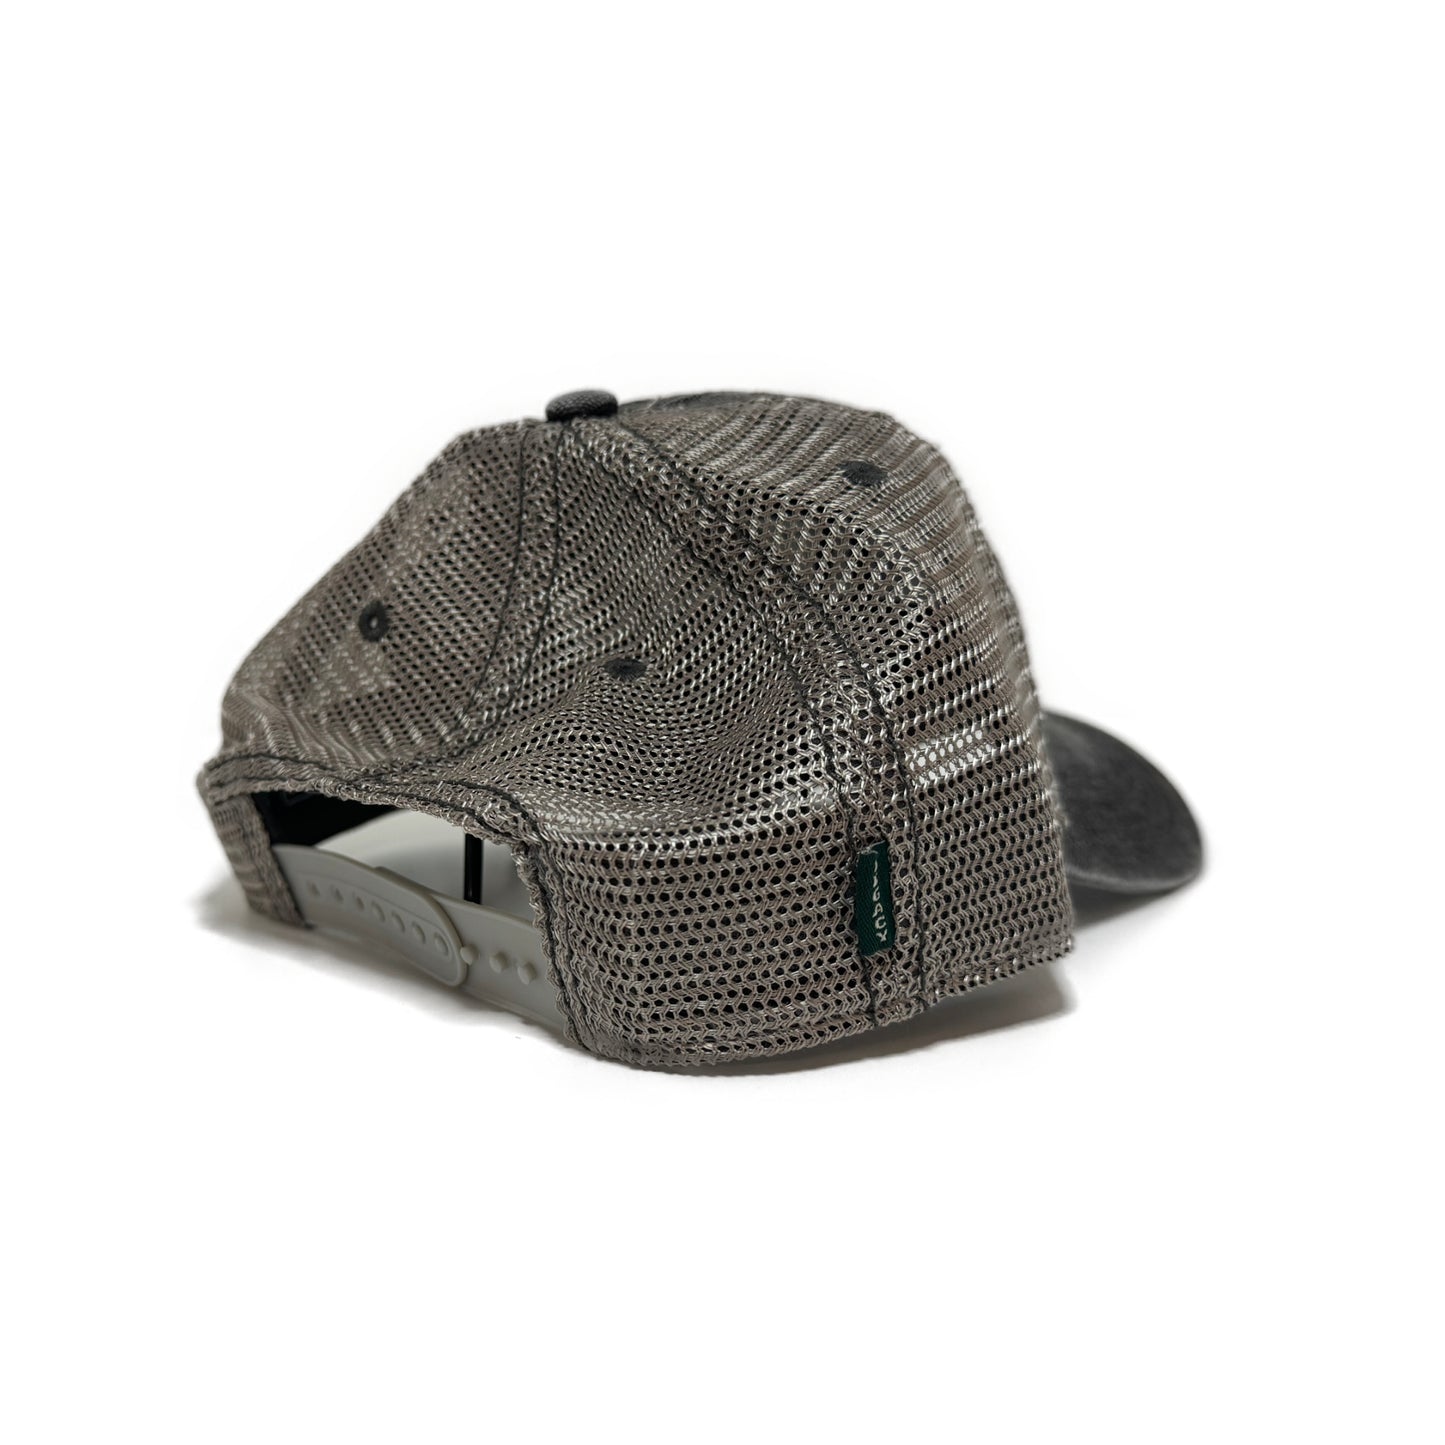 Sunrise OSS Trucker Hat - Black/Grey